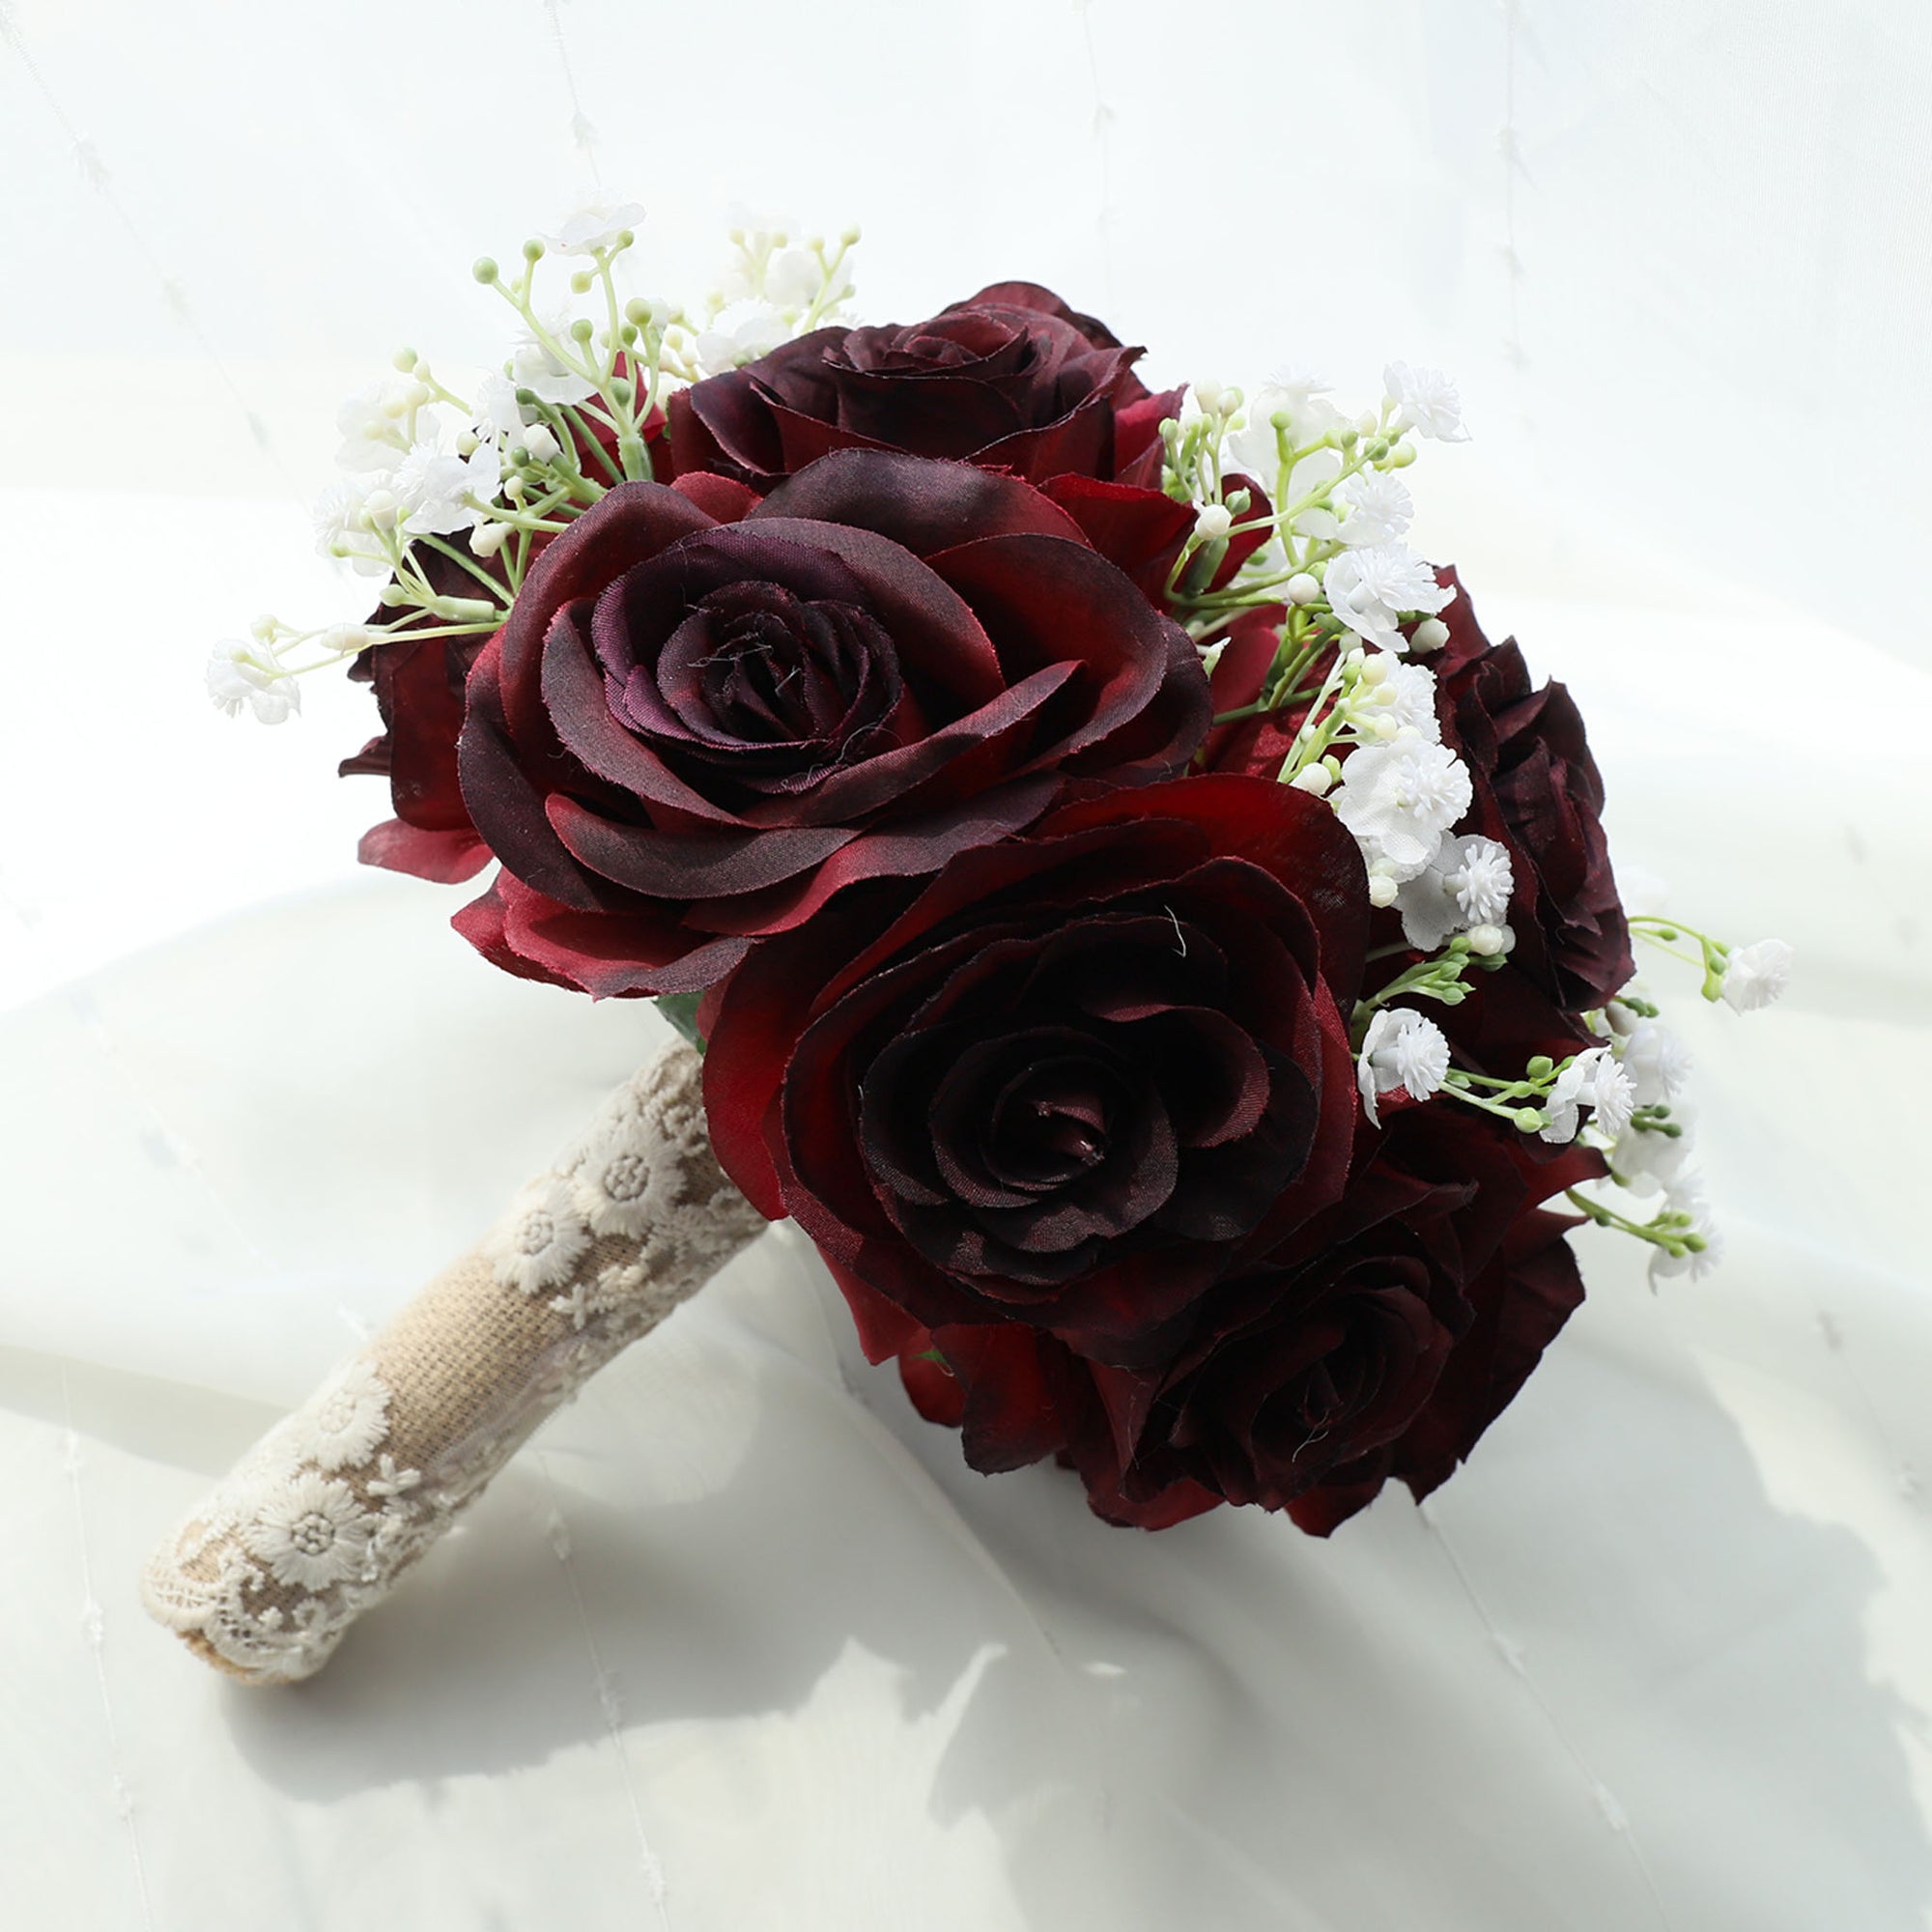 Burgundy Rose Flower Fall Wedding Bouquet